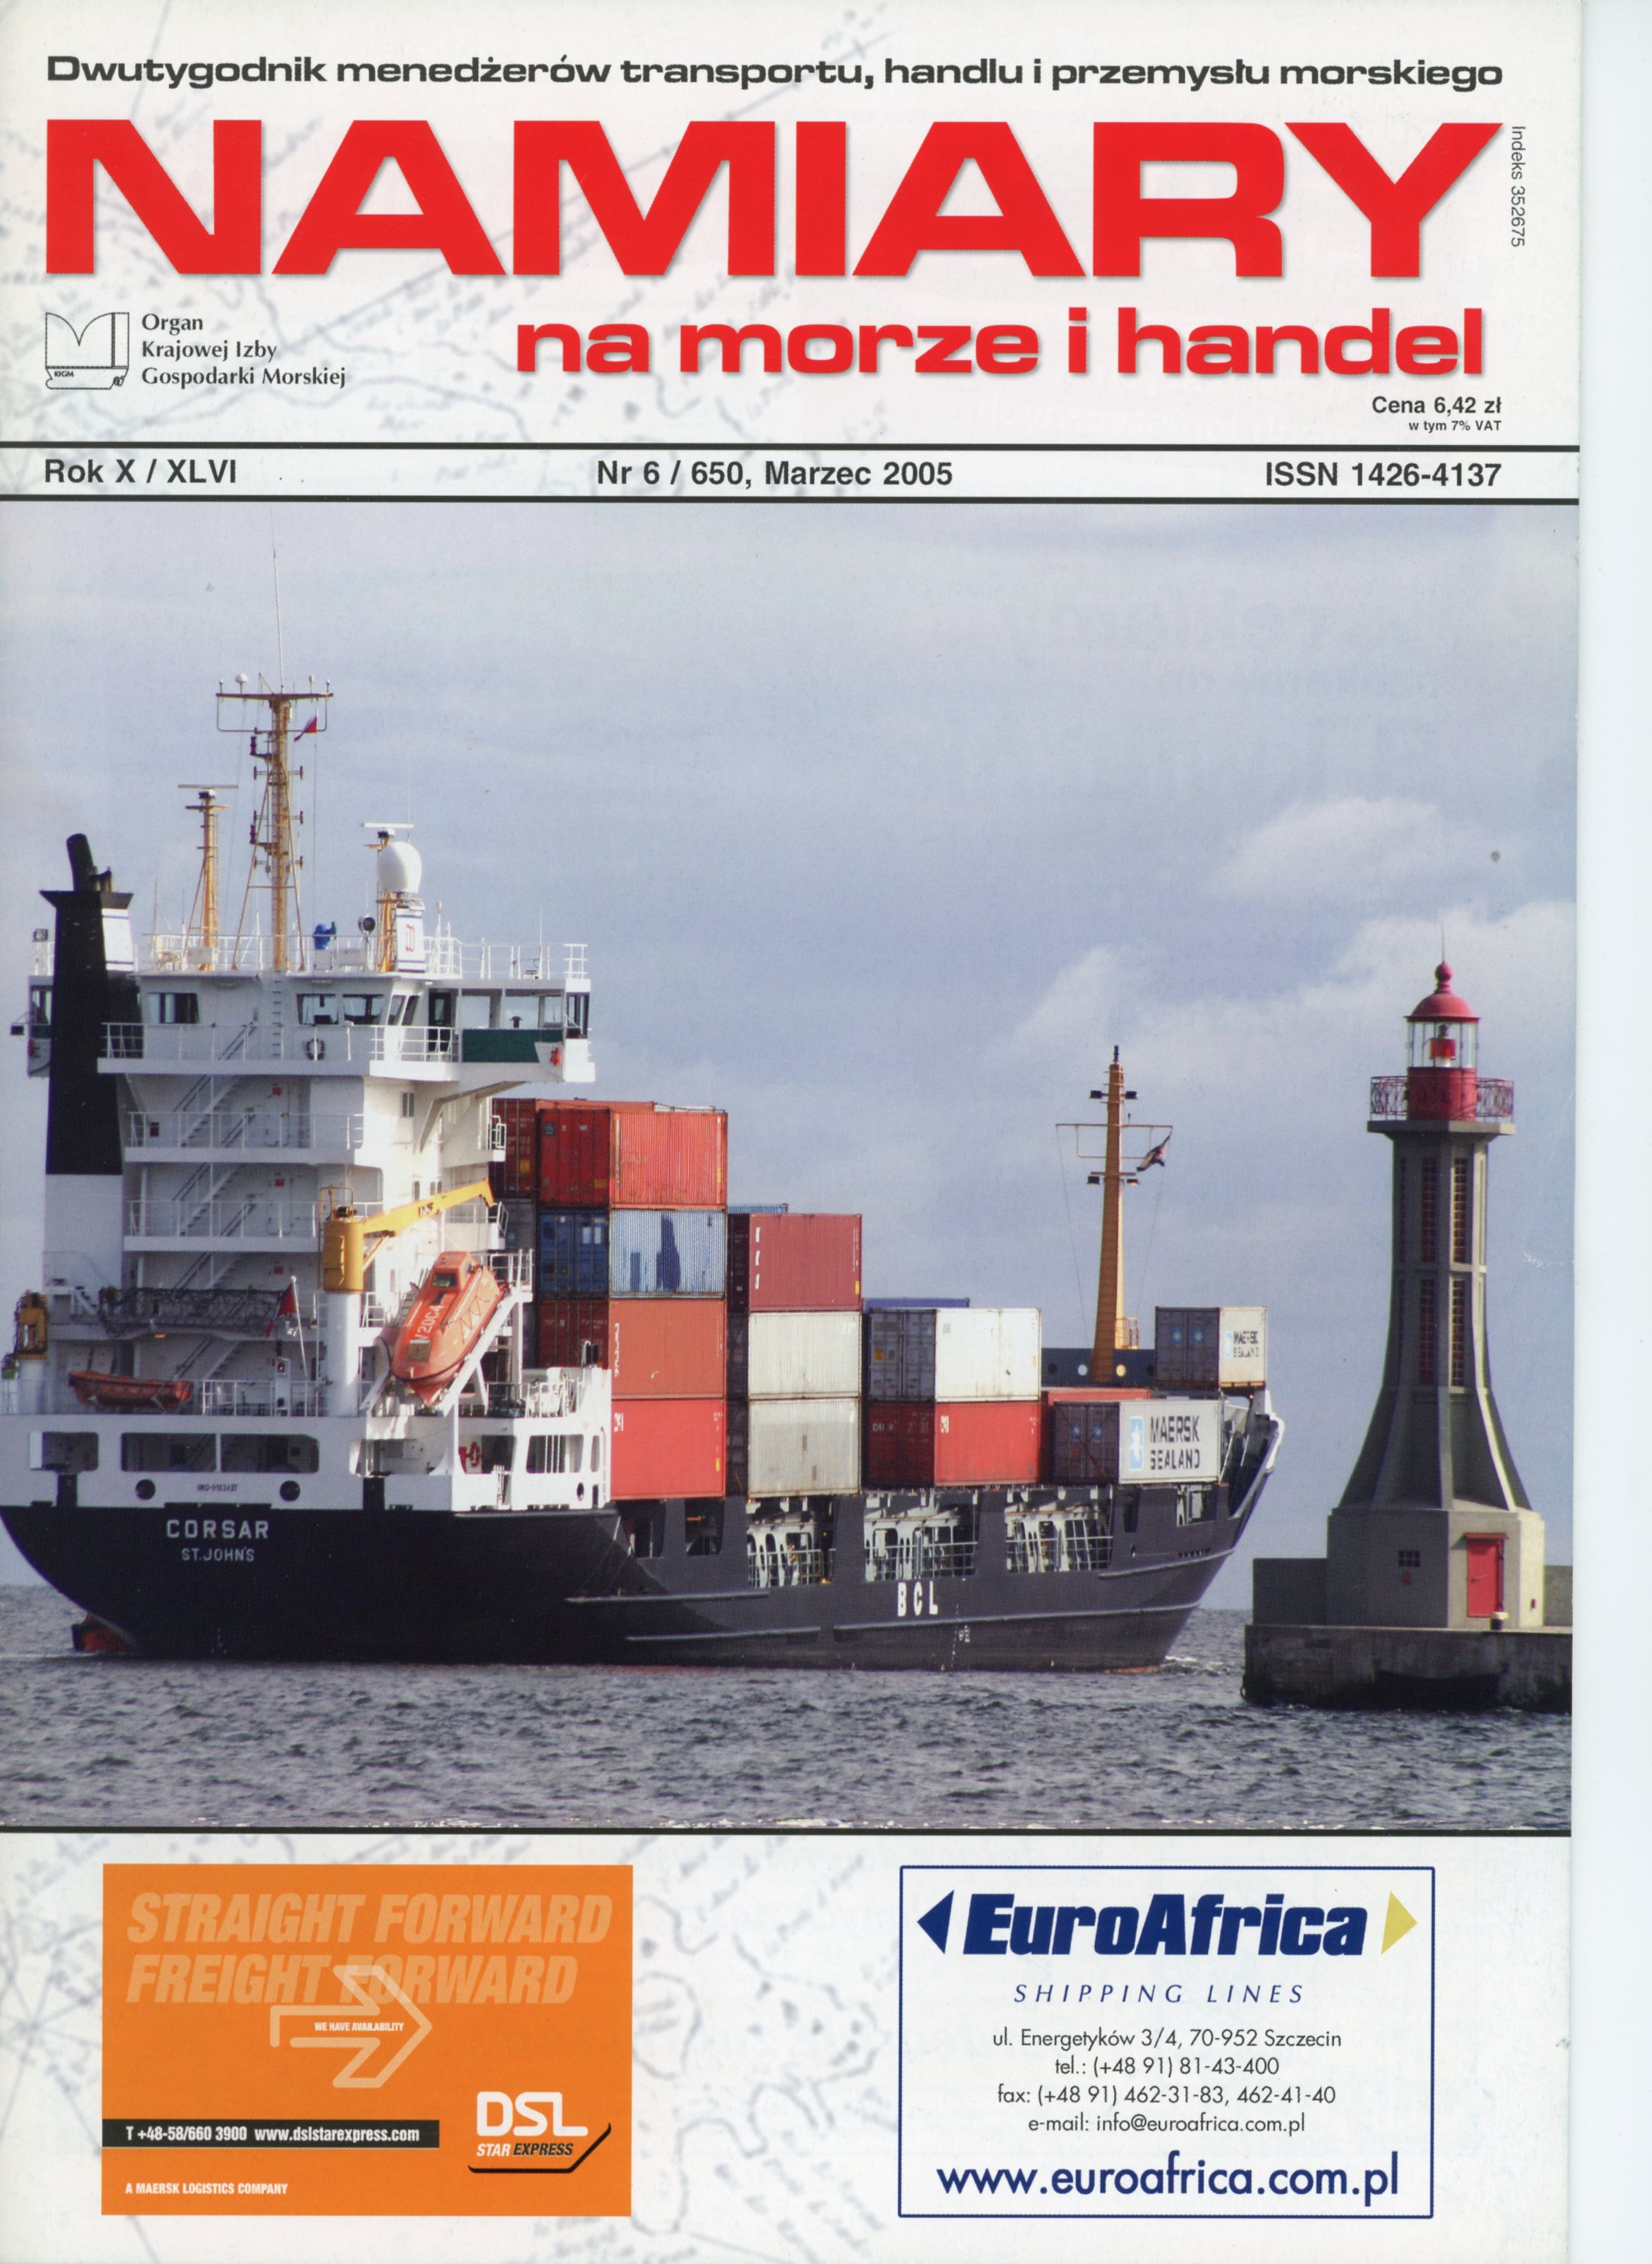 NAMIARY NA MORZE I HANDEL: dwutygodnik menedżerów transportu, handlu i przemysłu morskiego